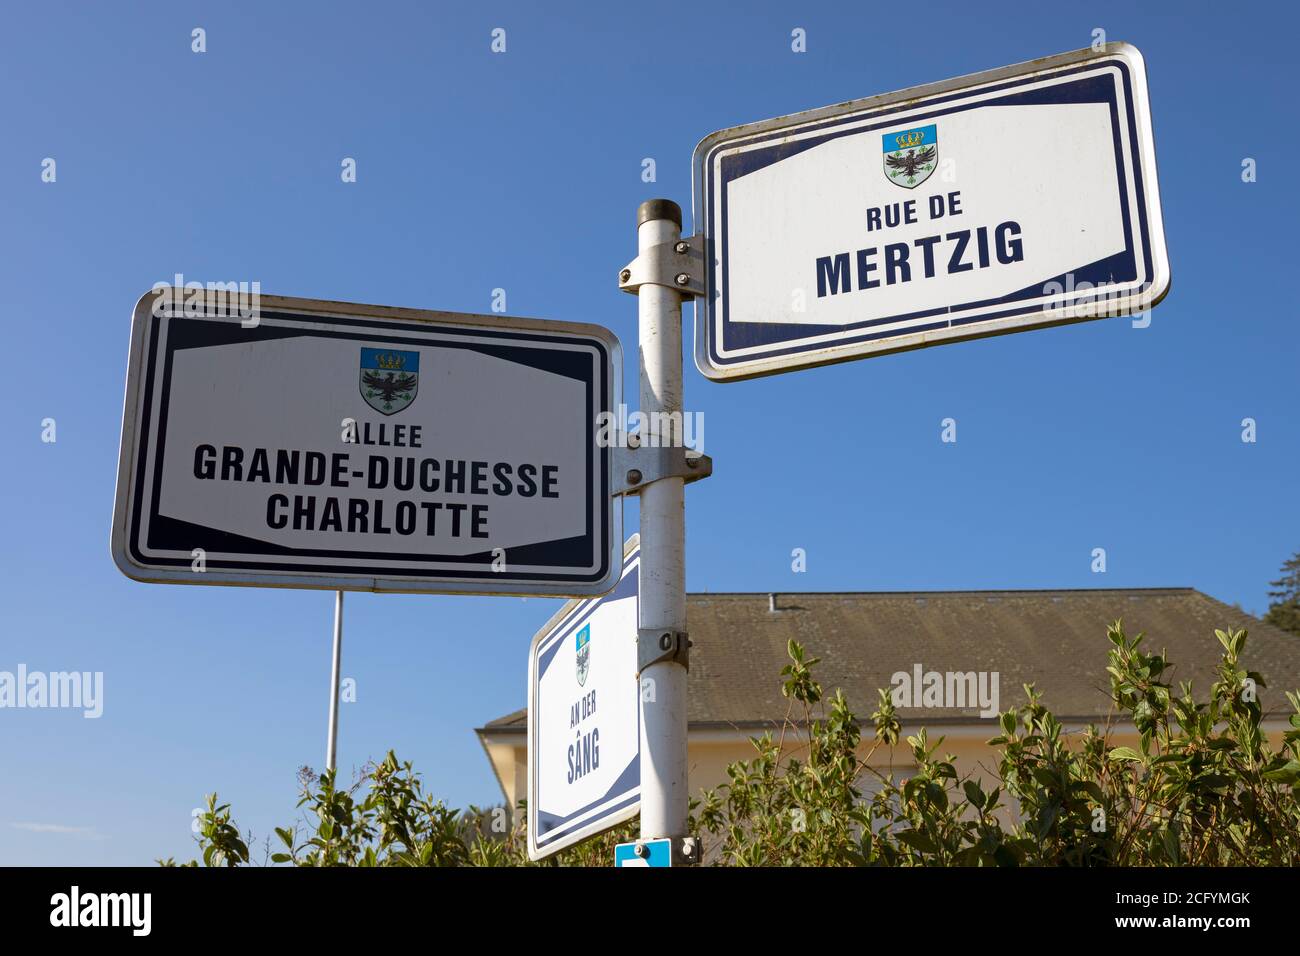 Europe, Luxembourg, Colmar-Berg, panneau à l'intersection de la rue de Mertzig et de l'allée Grande-Duchesse Charlotte Banque D'Images